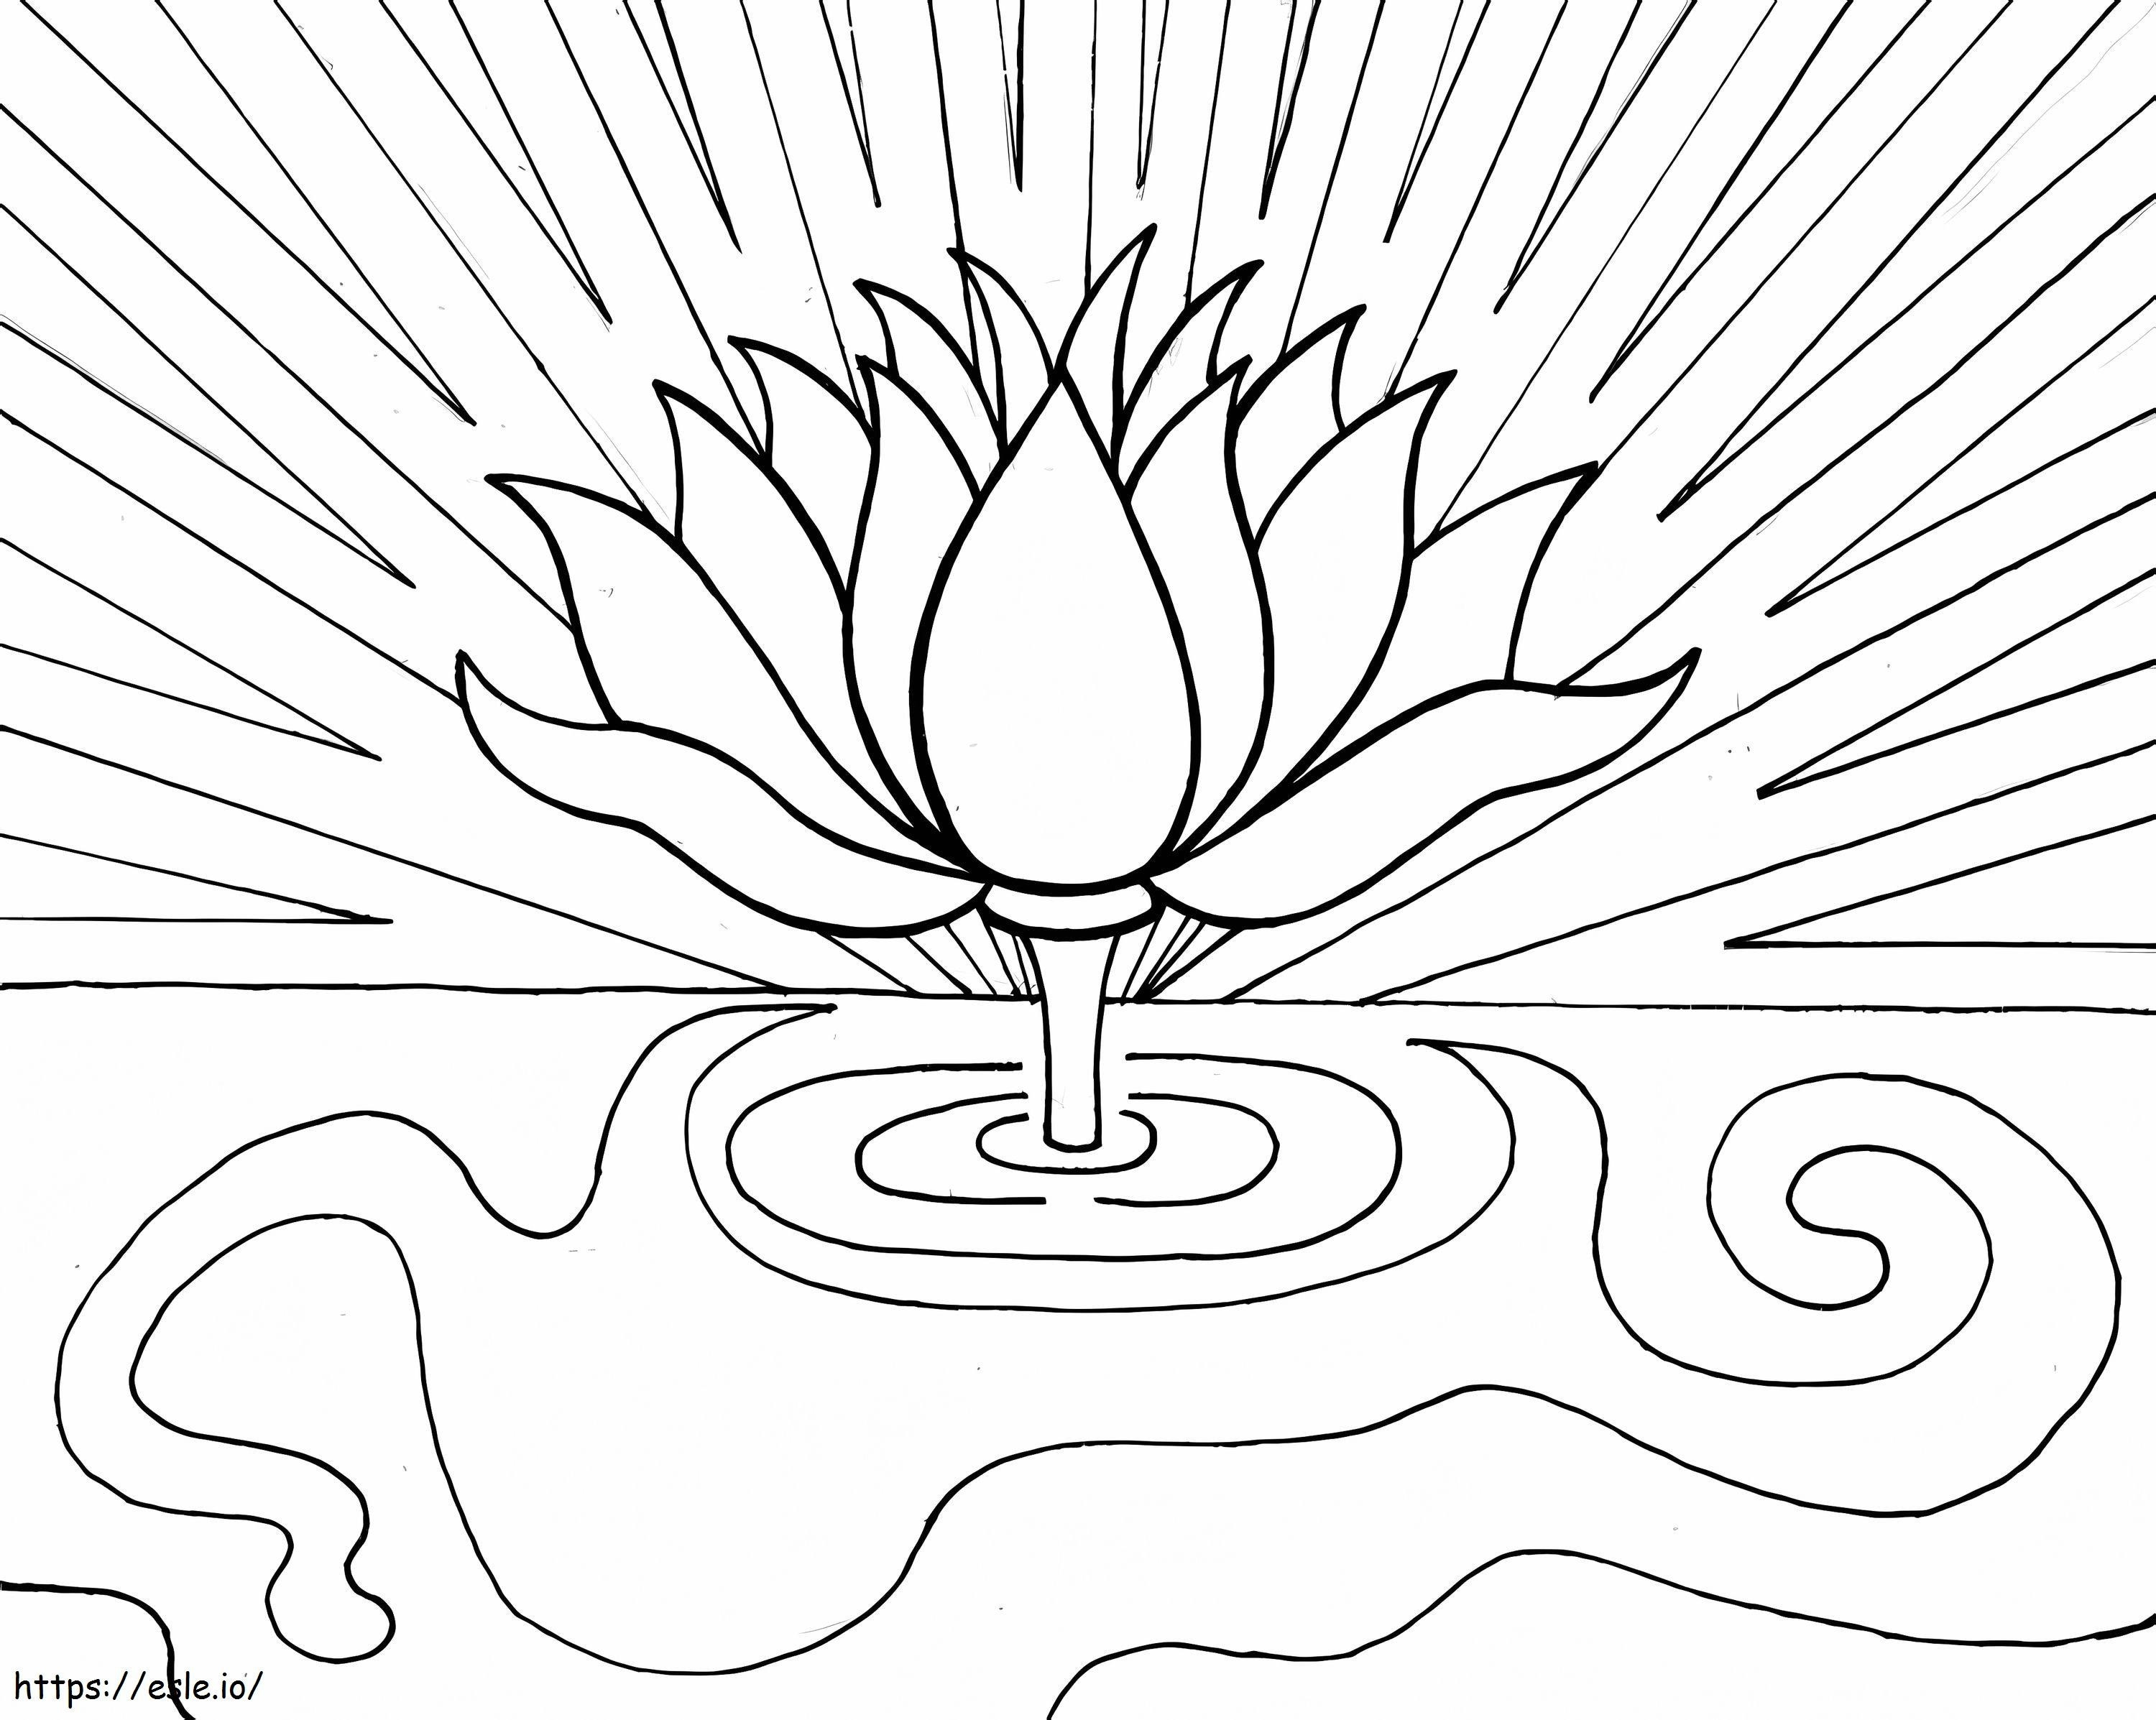 Wonderful Lotus coloring page